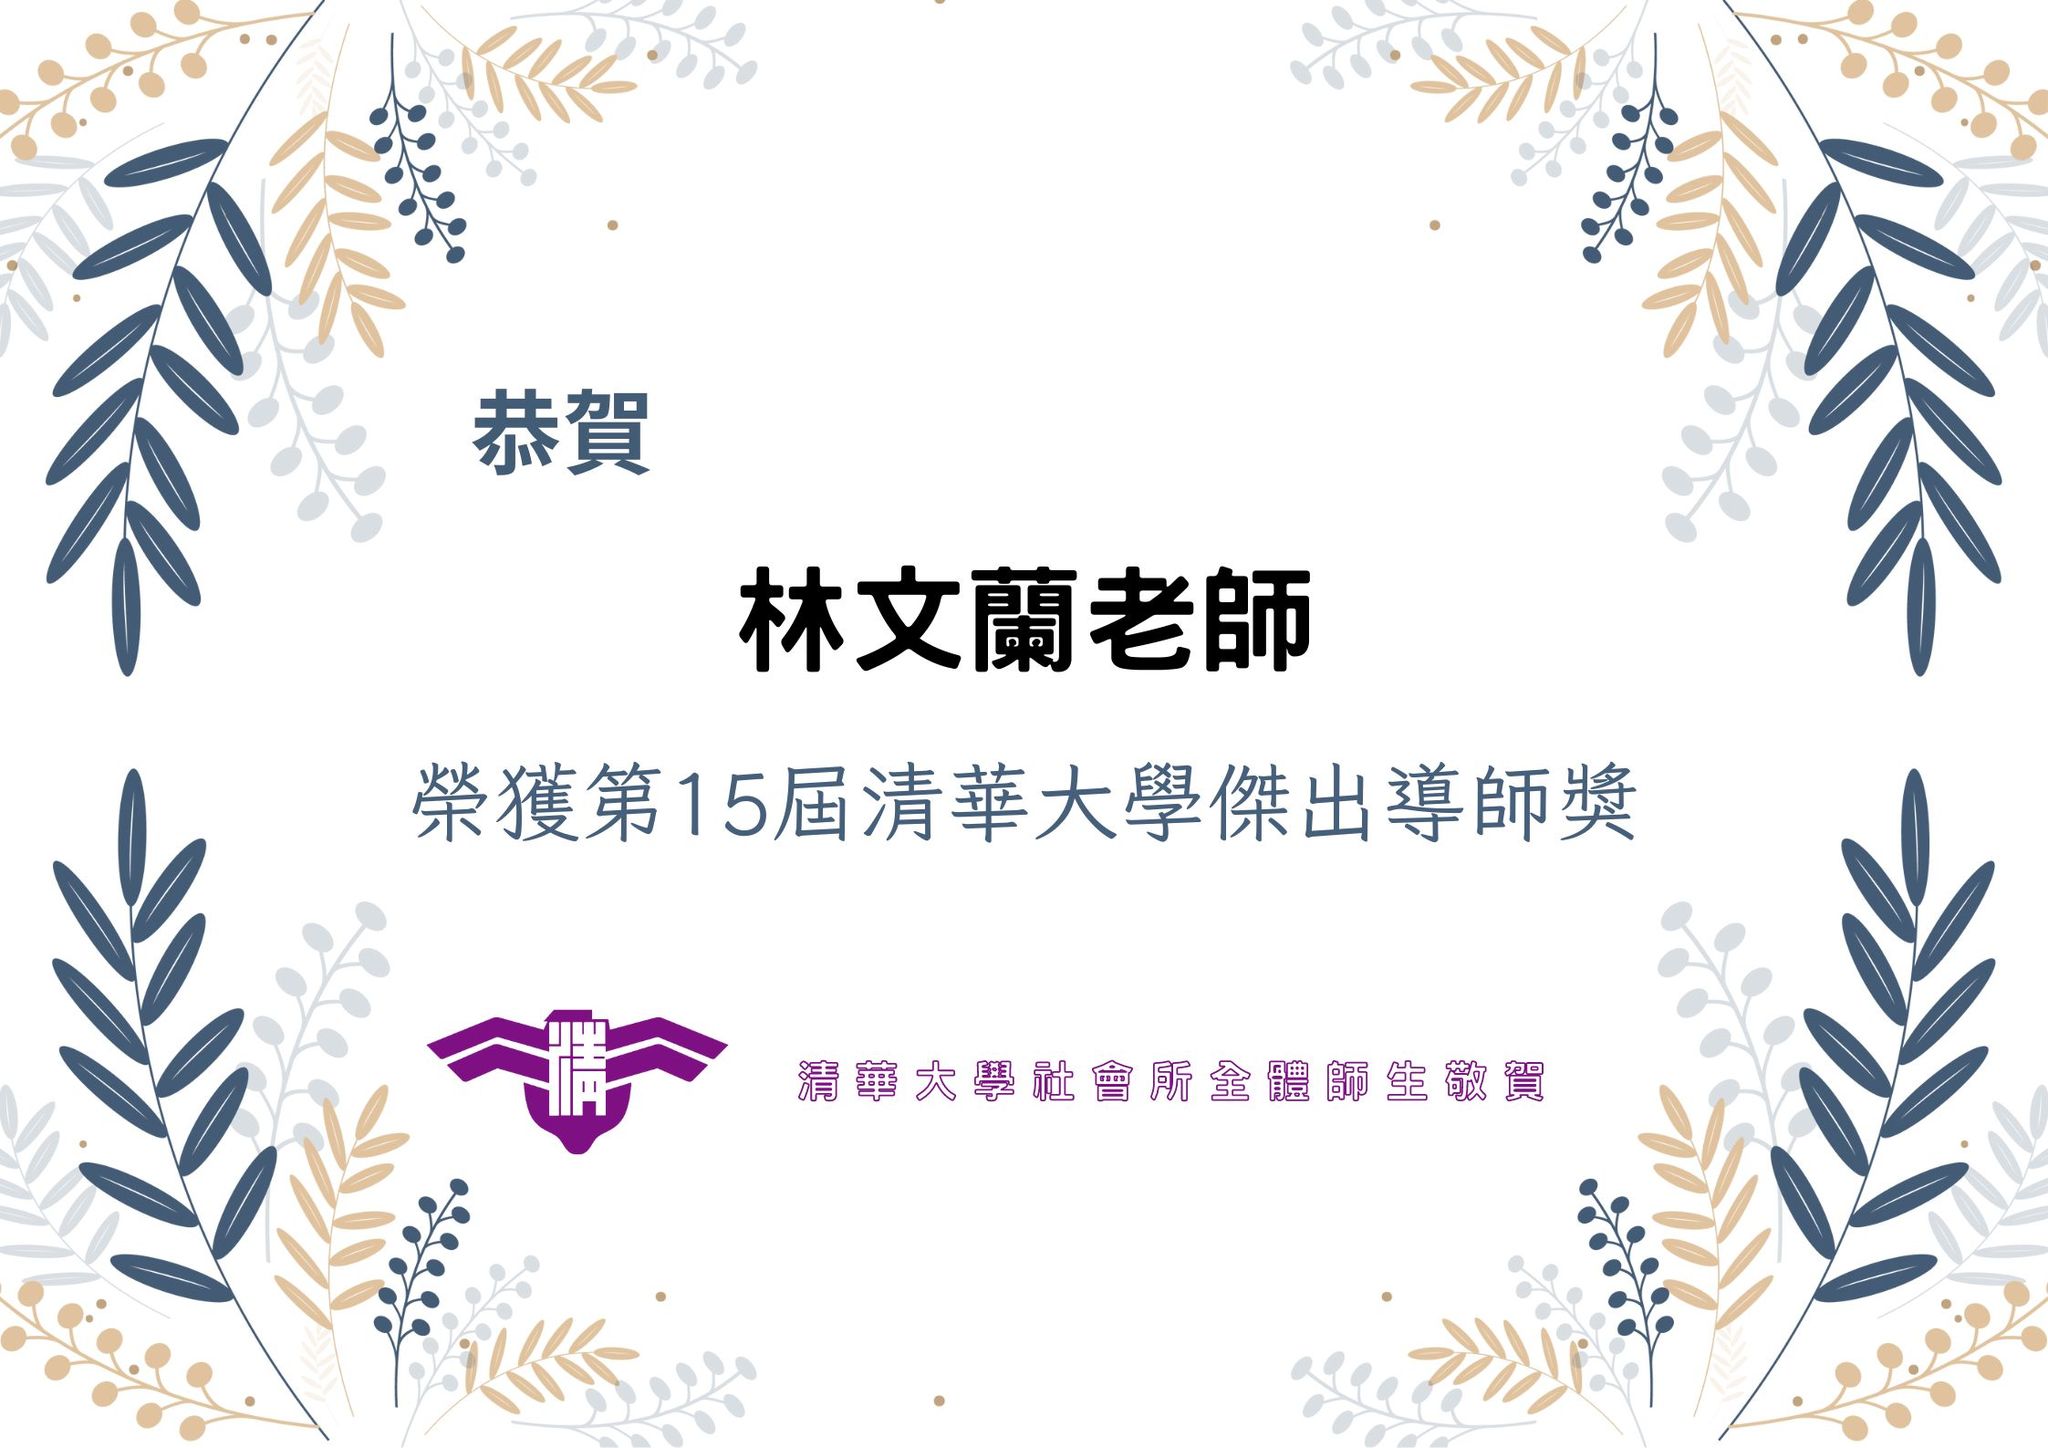 【賀】恭喜林文蘭老師 榮獲第15屆清華大學傑出導師獎！！🎉🎈🎉🎈🎉🎈🎉